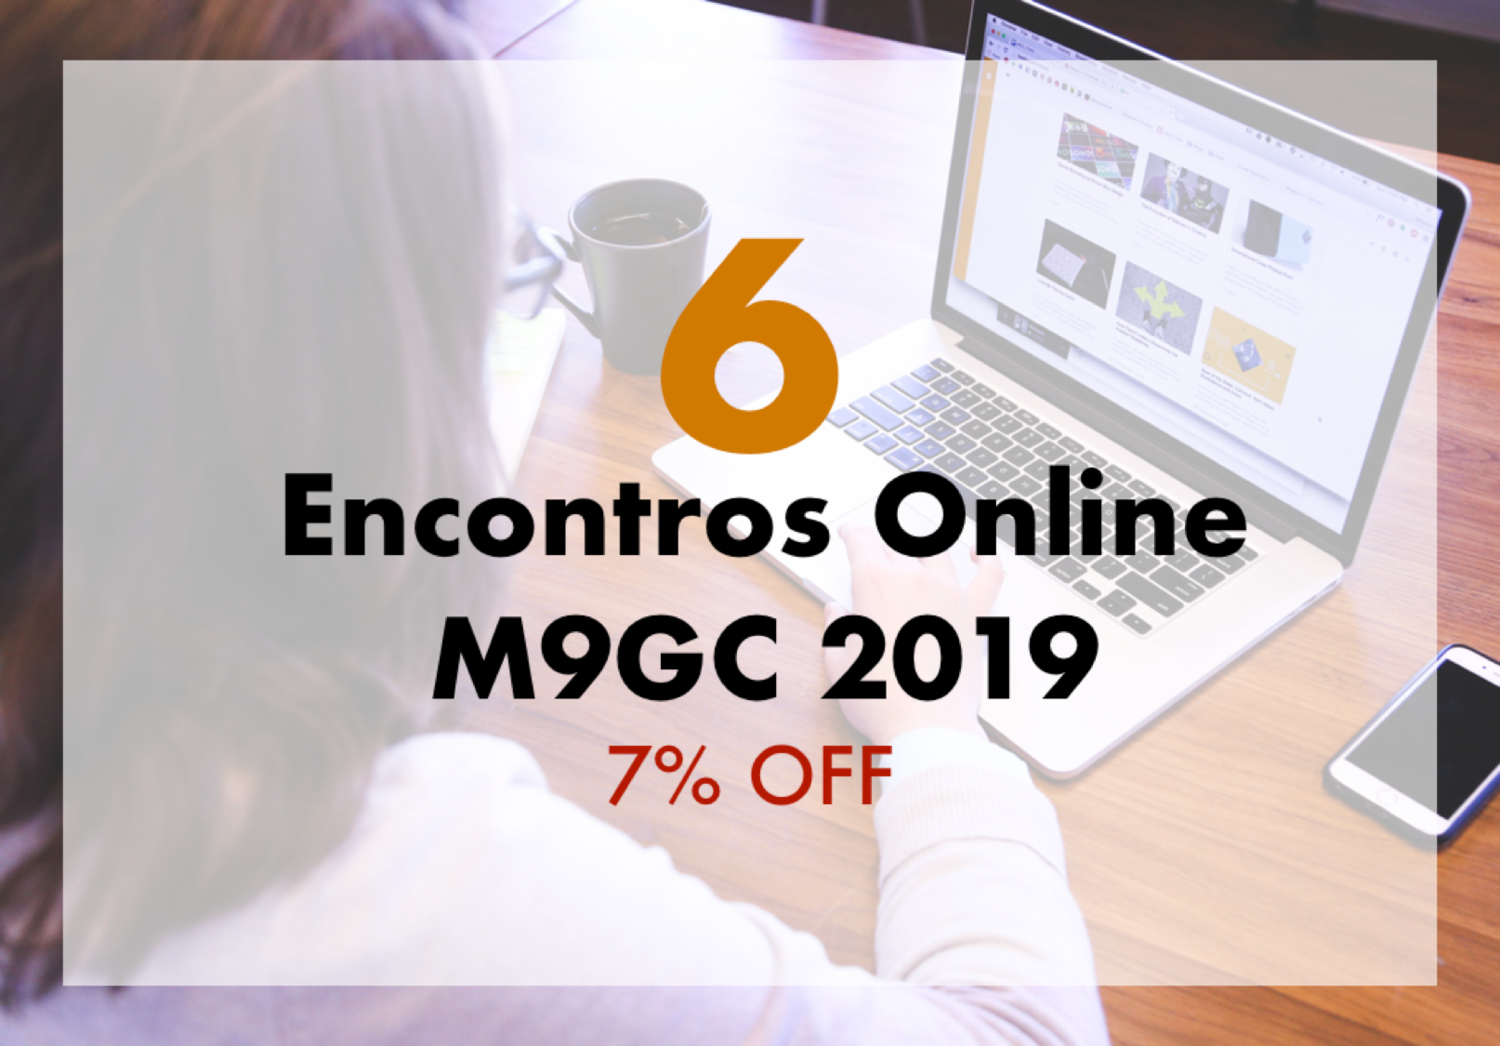 Pacote com 6 Encontros Online M9GC 2019